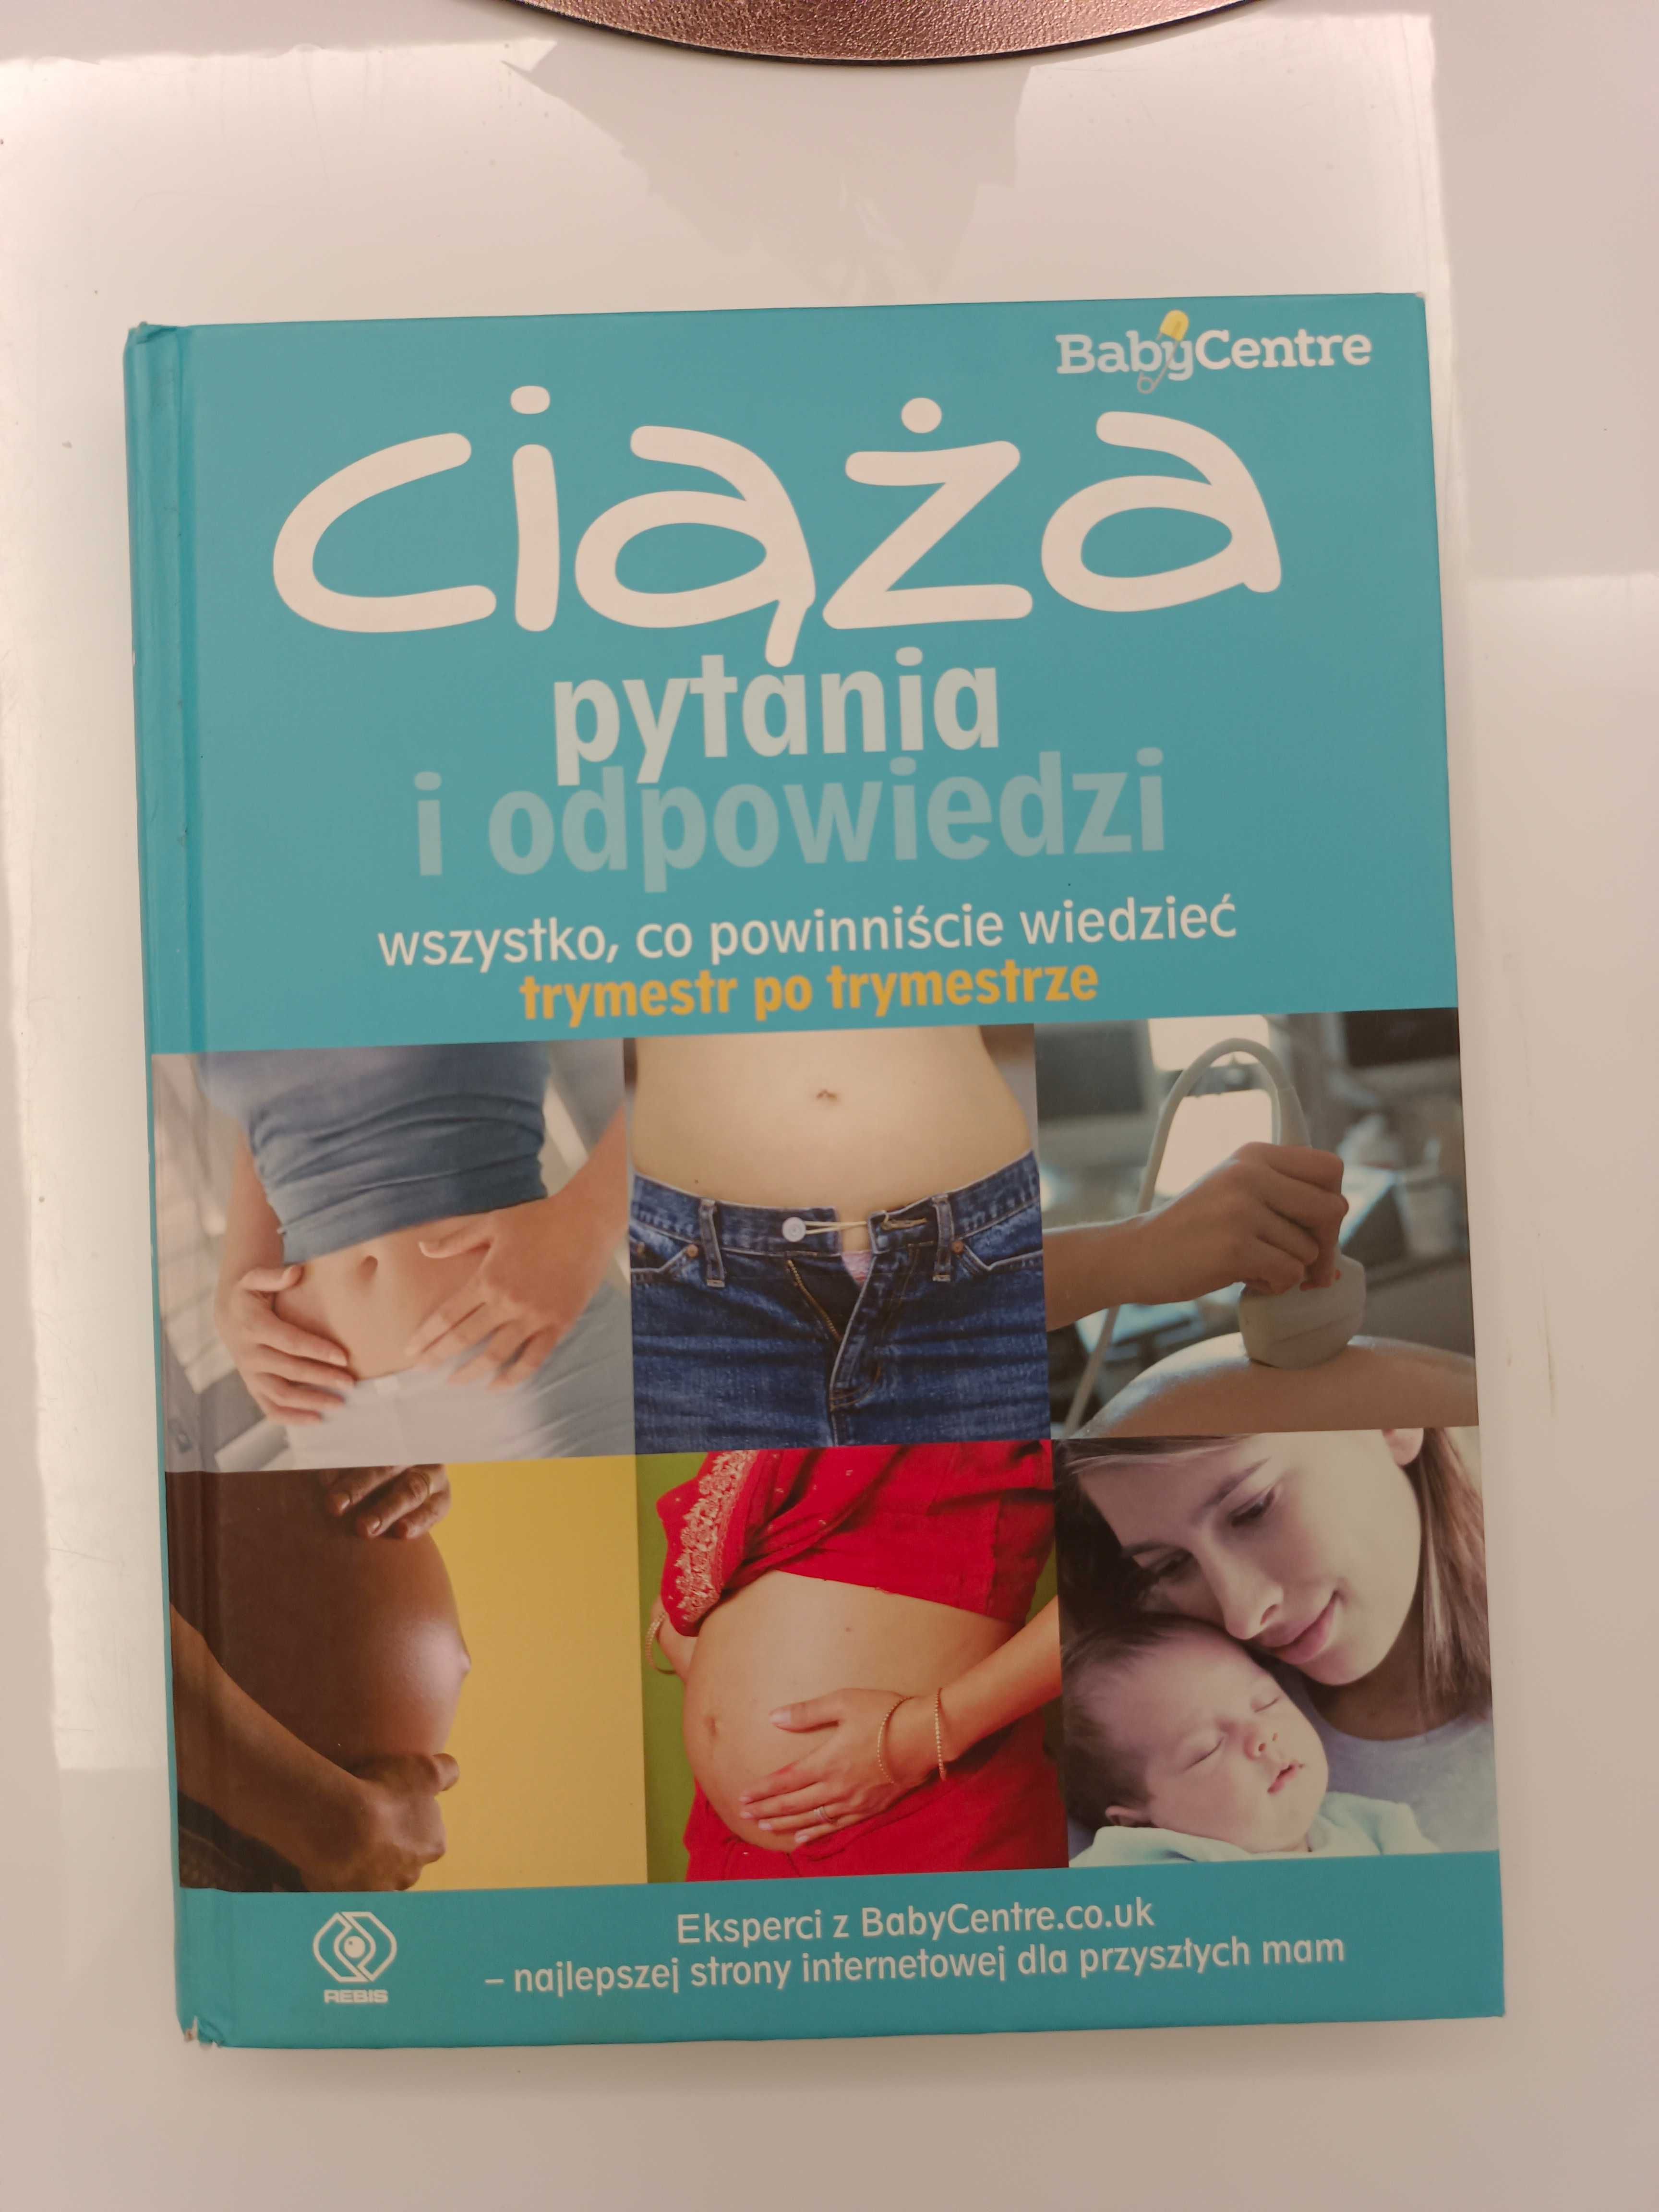 Książka Baby Center "Ciąża pytania i odpowiedzi" w twardej oprawie